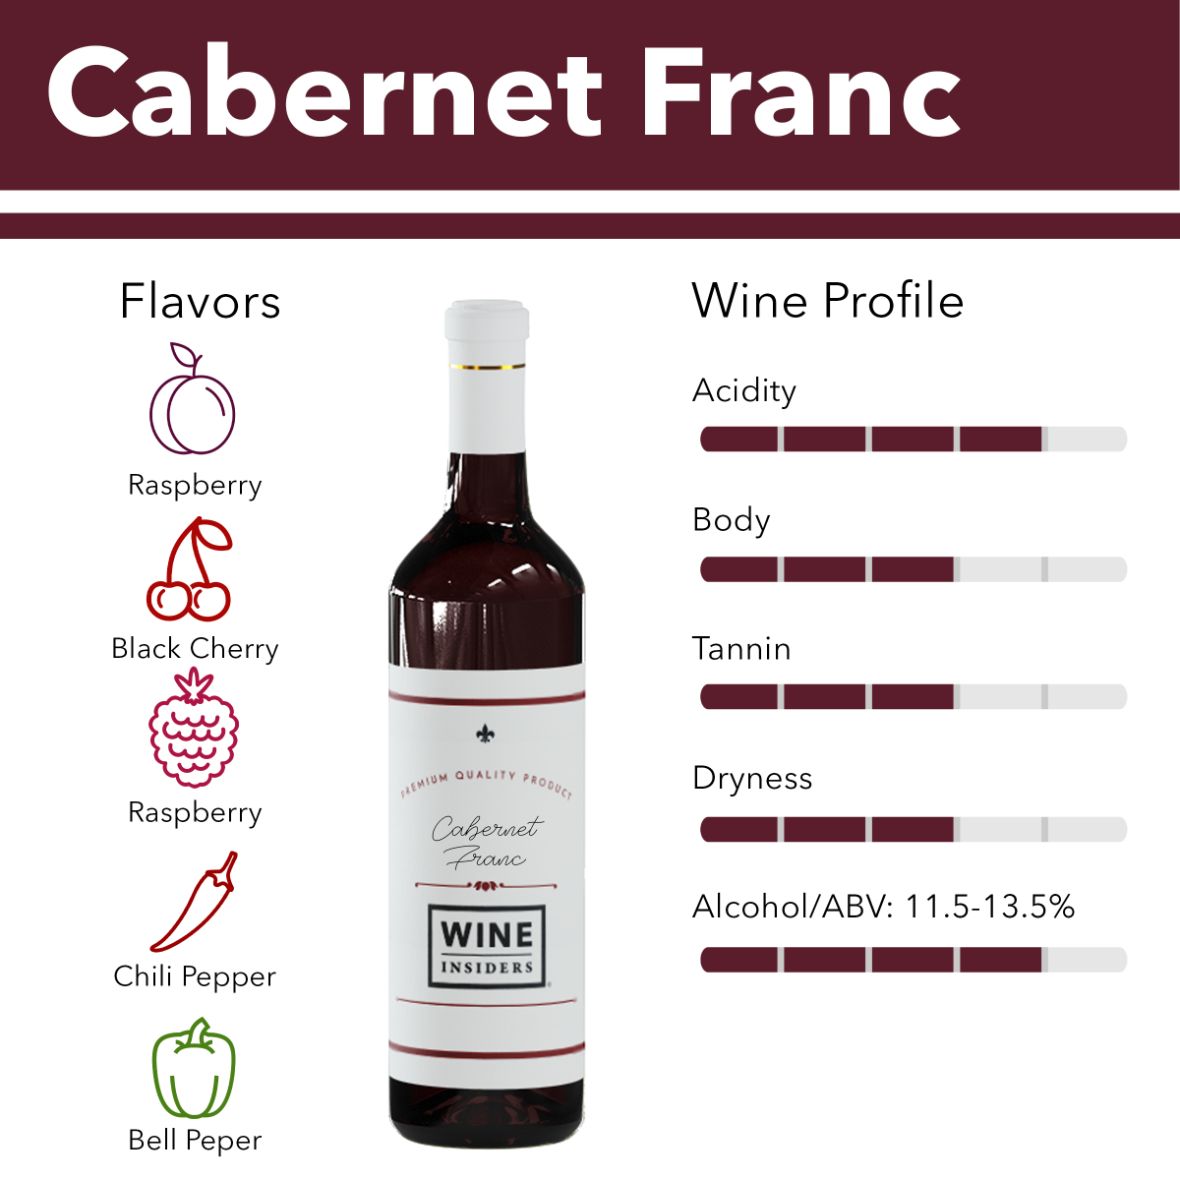 Cabernet Franc flavor profile 